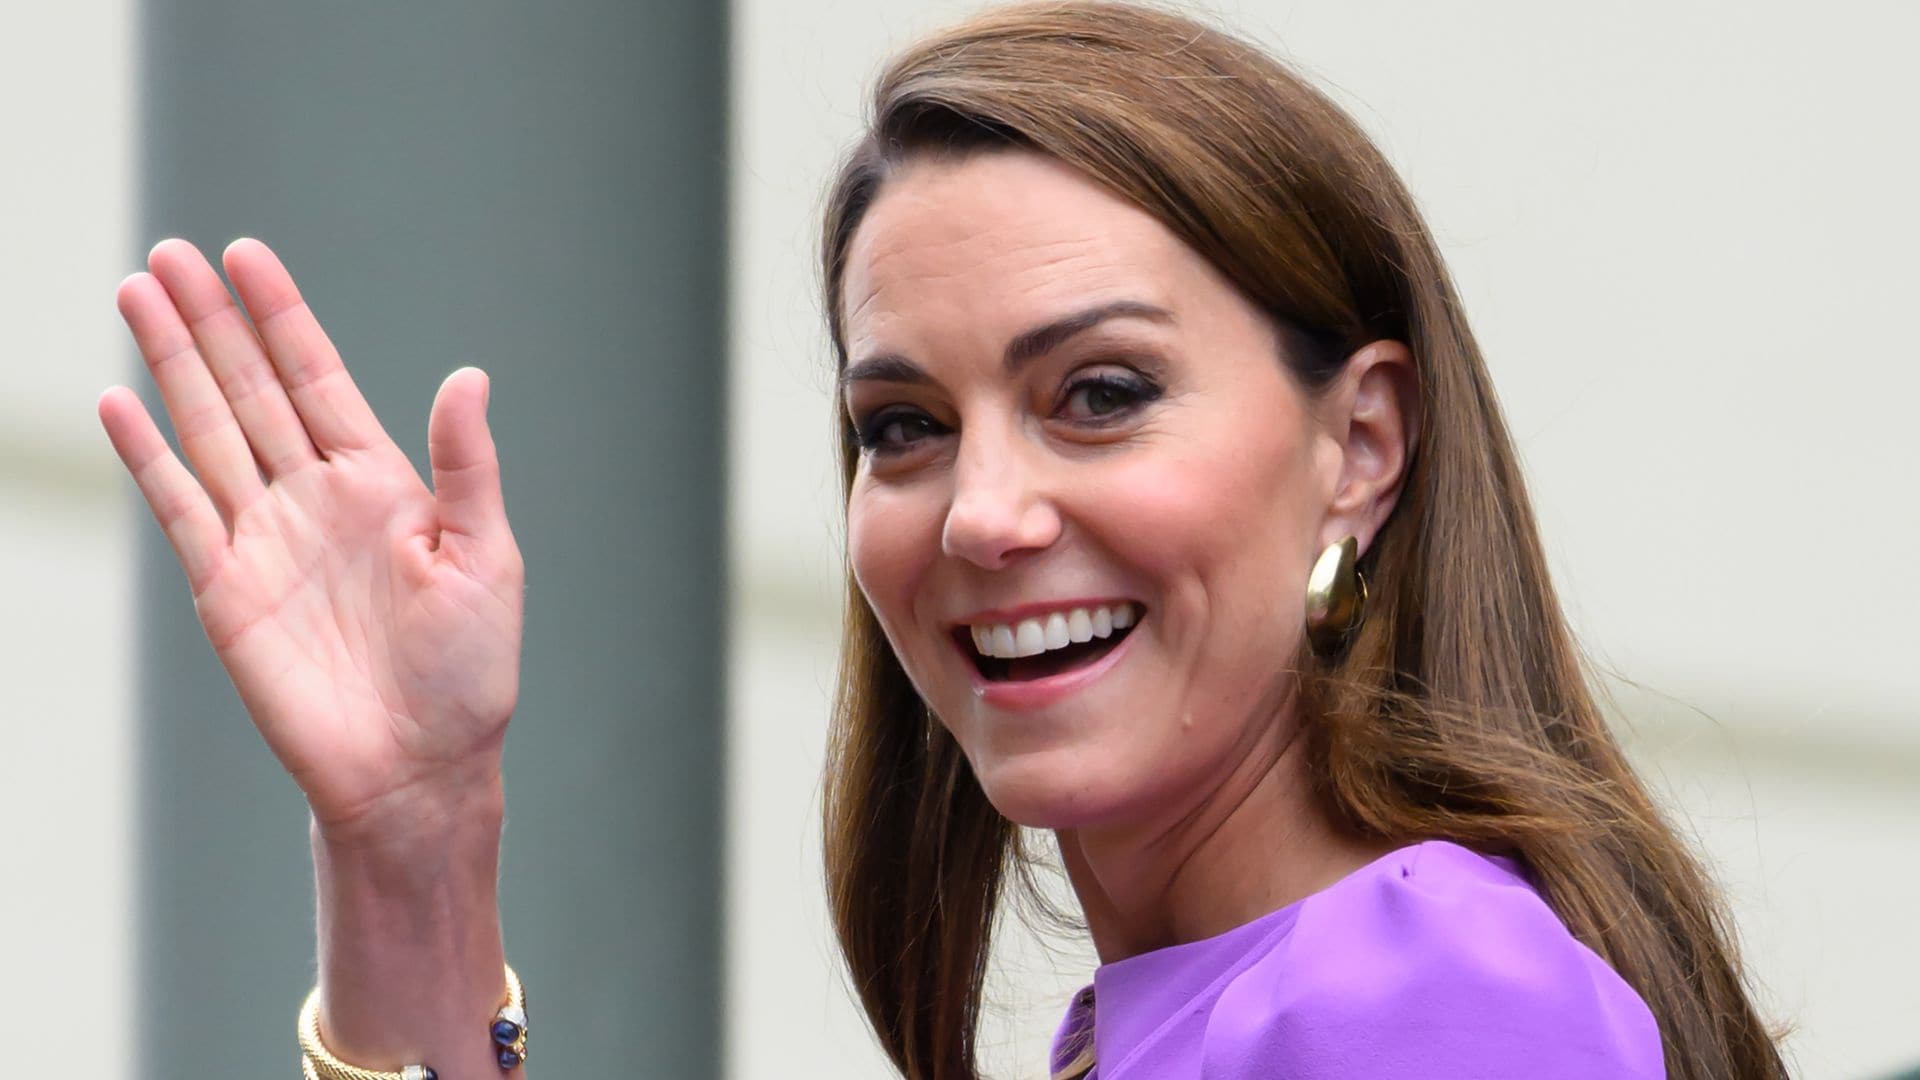 Kate Middleton deslumbra con un vestido morado drapeado, guiño al torneo, y calzado destalonado